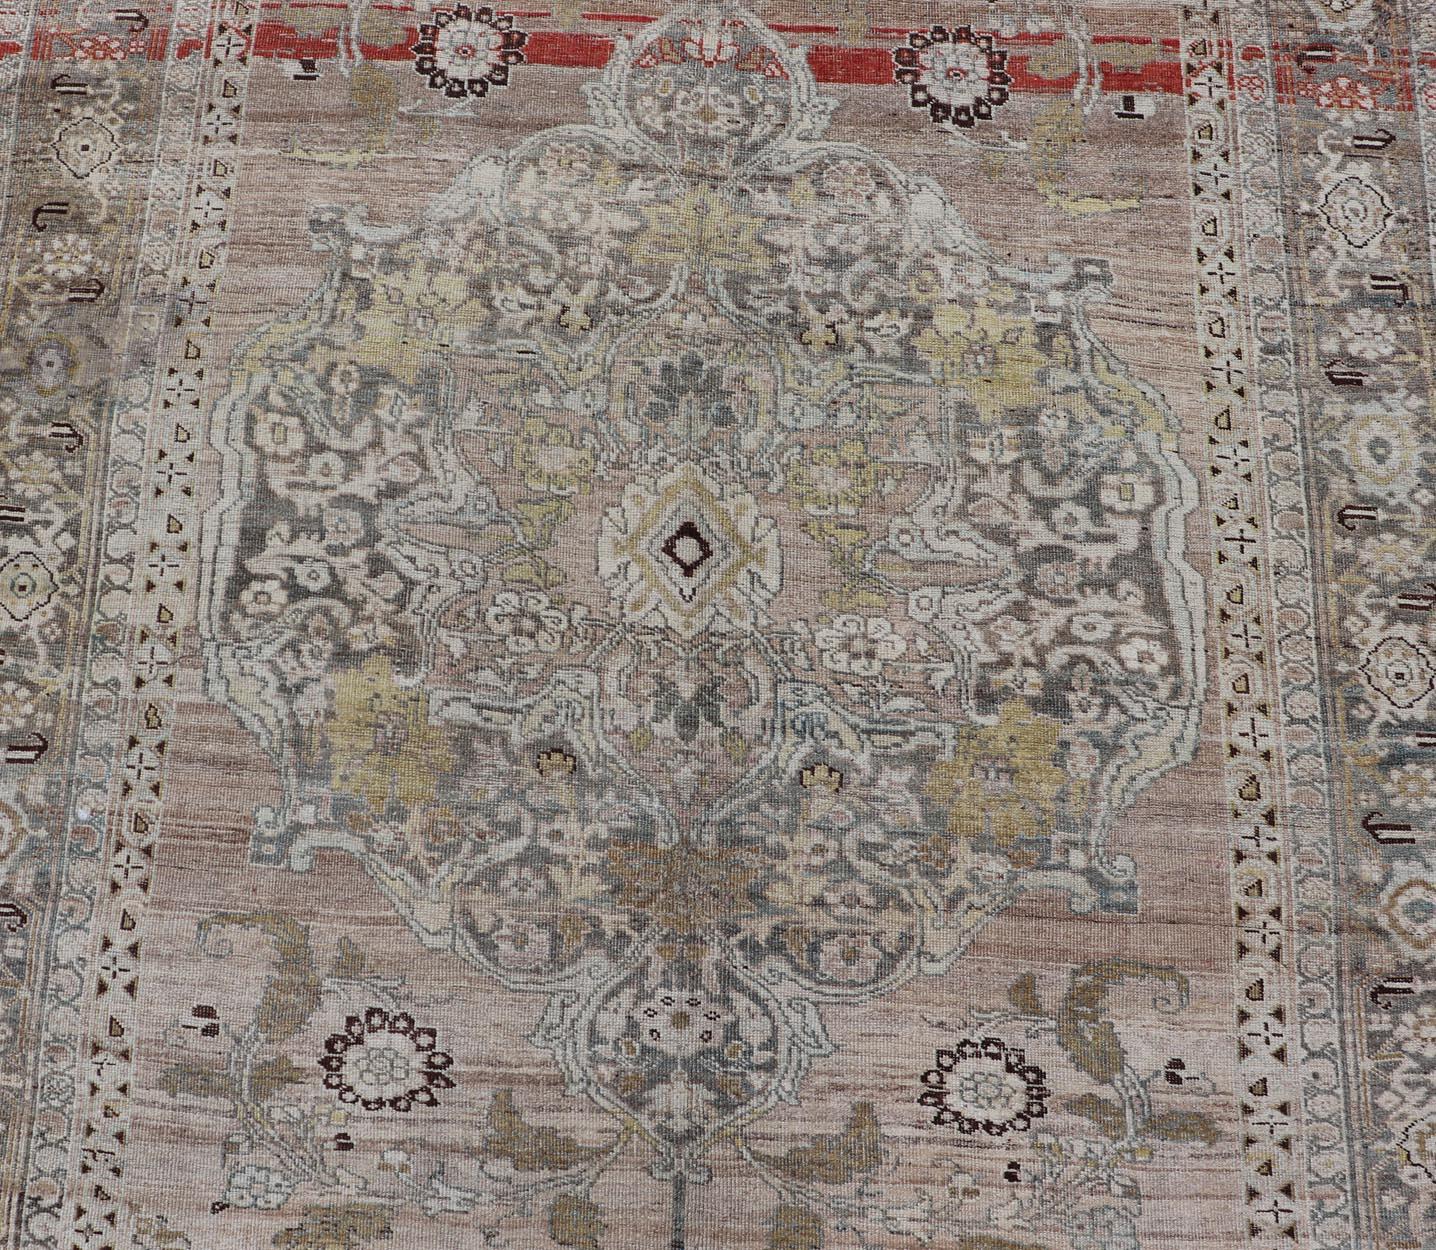  Antique Persian Bidjar Rug with Large Floral Medallion and Vining Floral 5